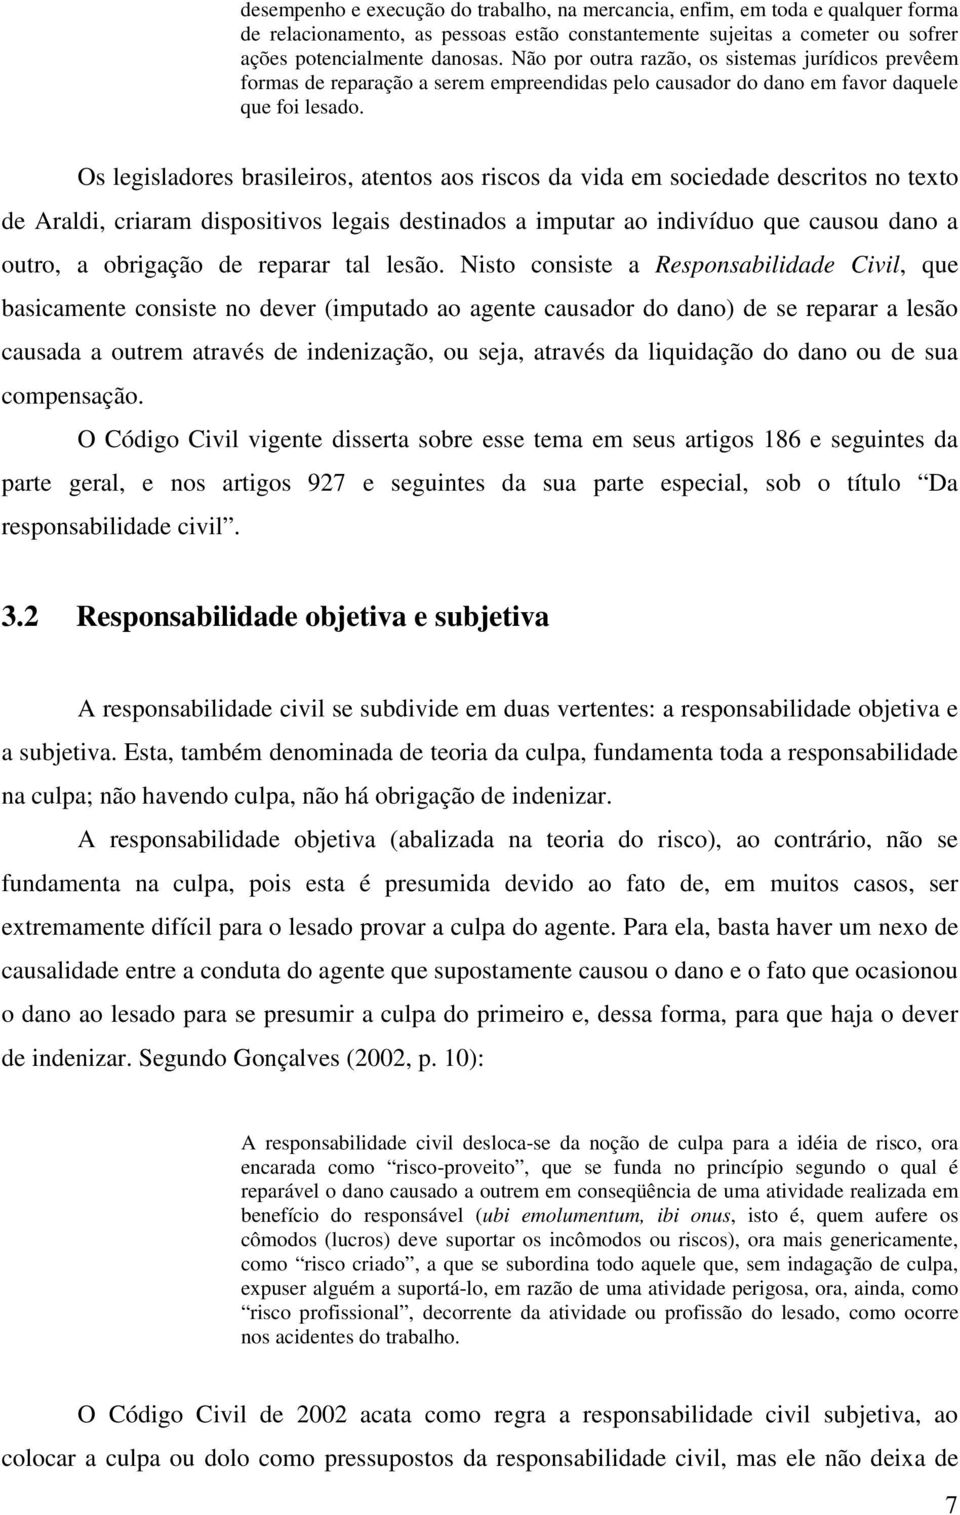 Os legisladores brasileiros, atentos aos riscos da vida em sociedade descritos no texto de Araldi, criaram dispositivos legais destinados a imputar ao indivíduo que causou dano a outro, a obrigação